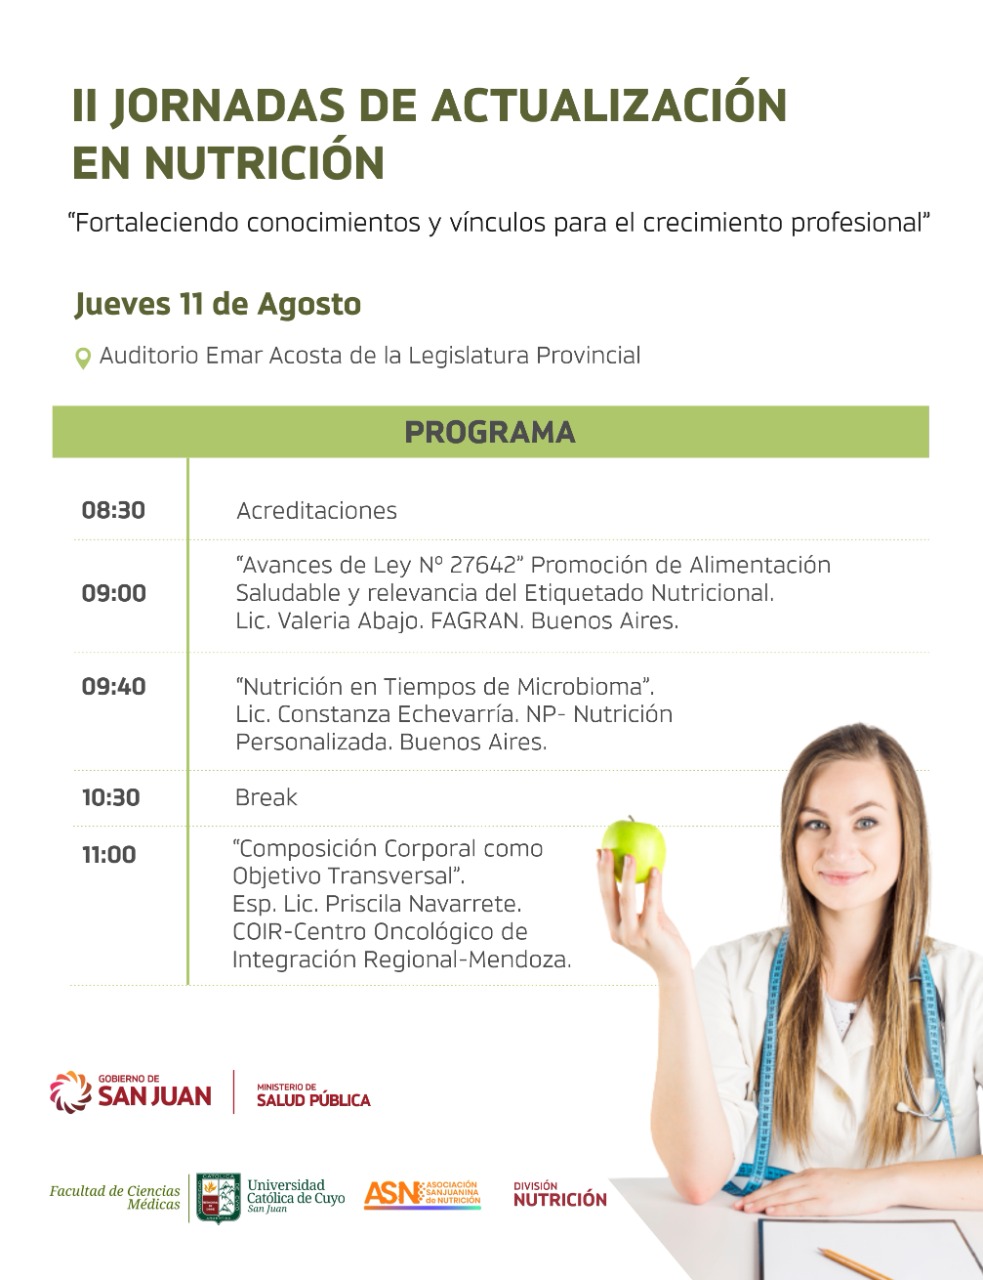 II Jornadas de actualización en Nutrición - “Fortaleciendo conocimientos y vínculos para el crecimiento profesional”